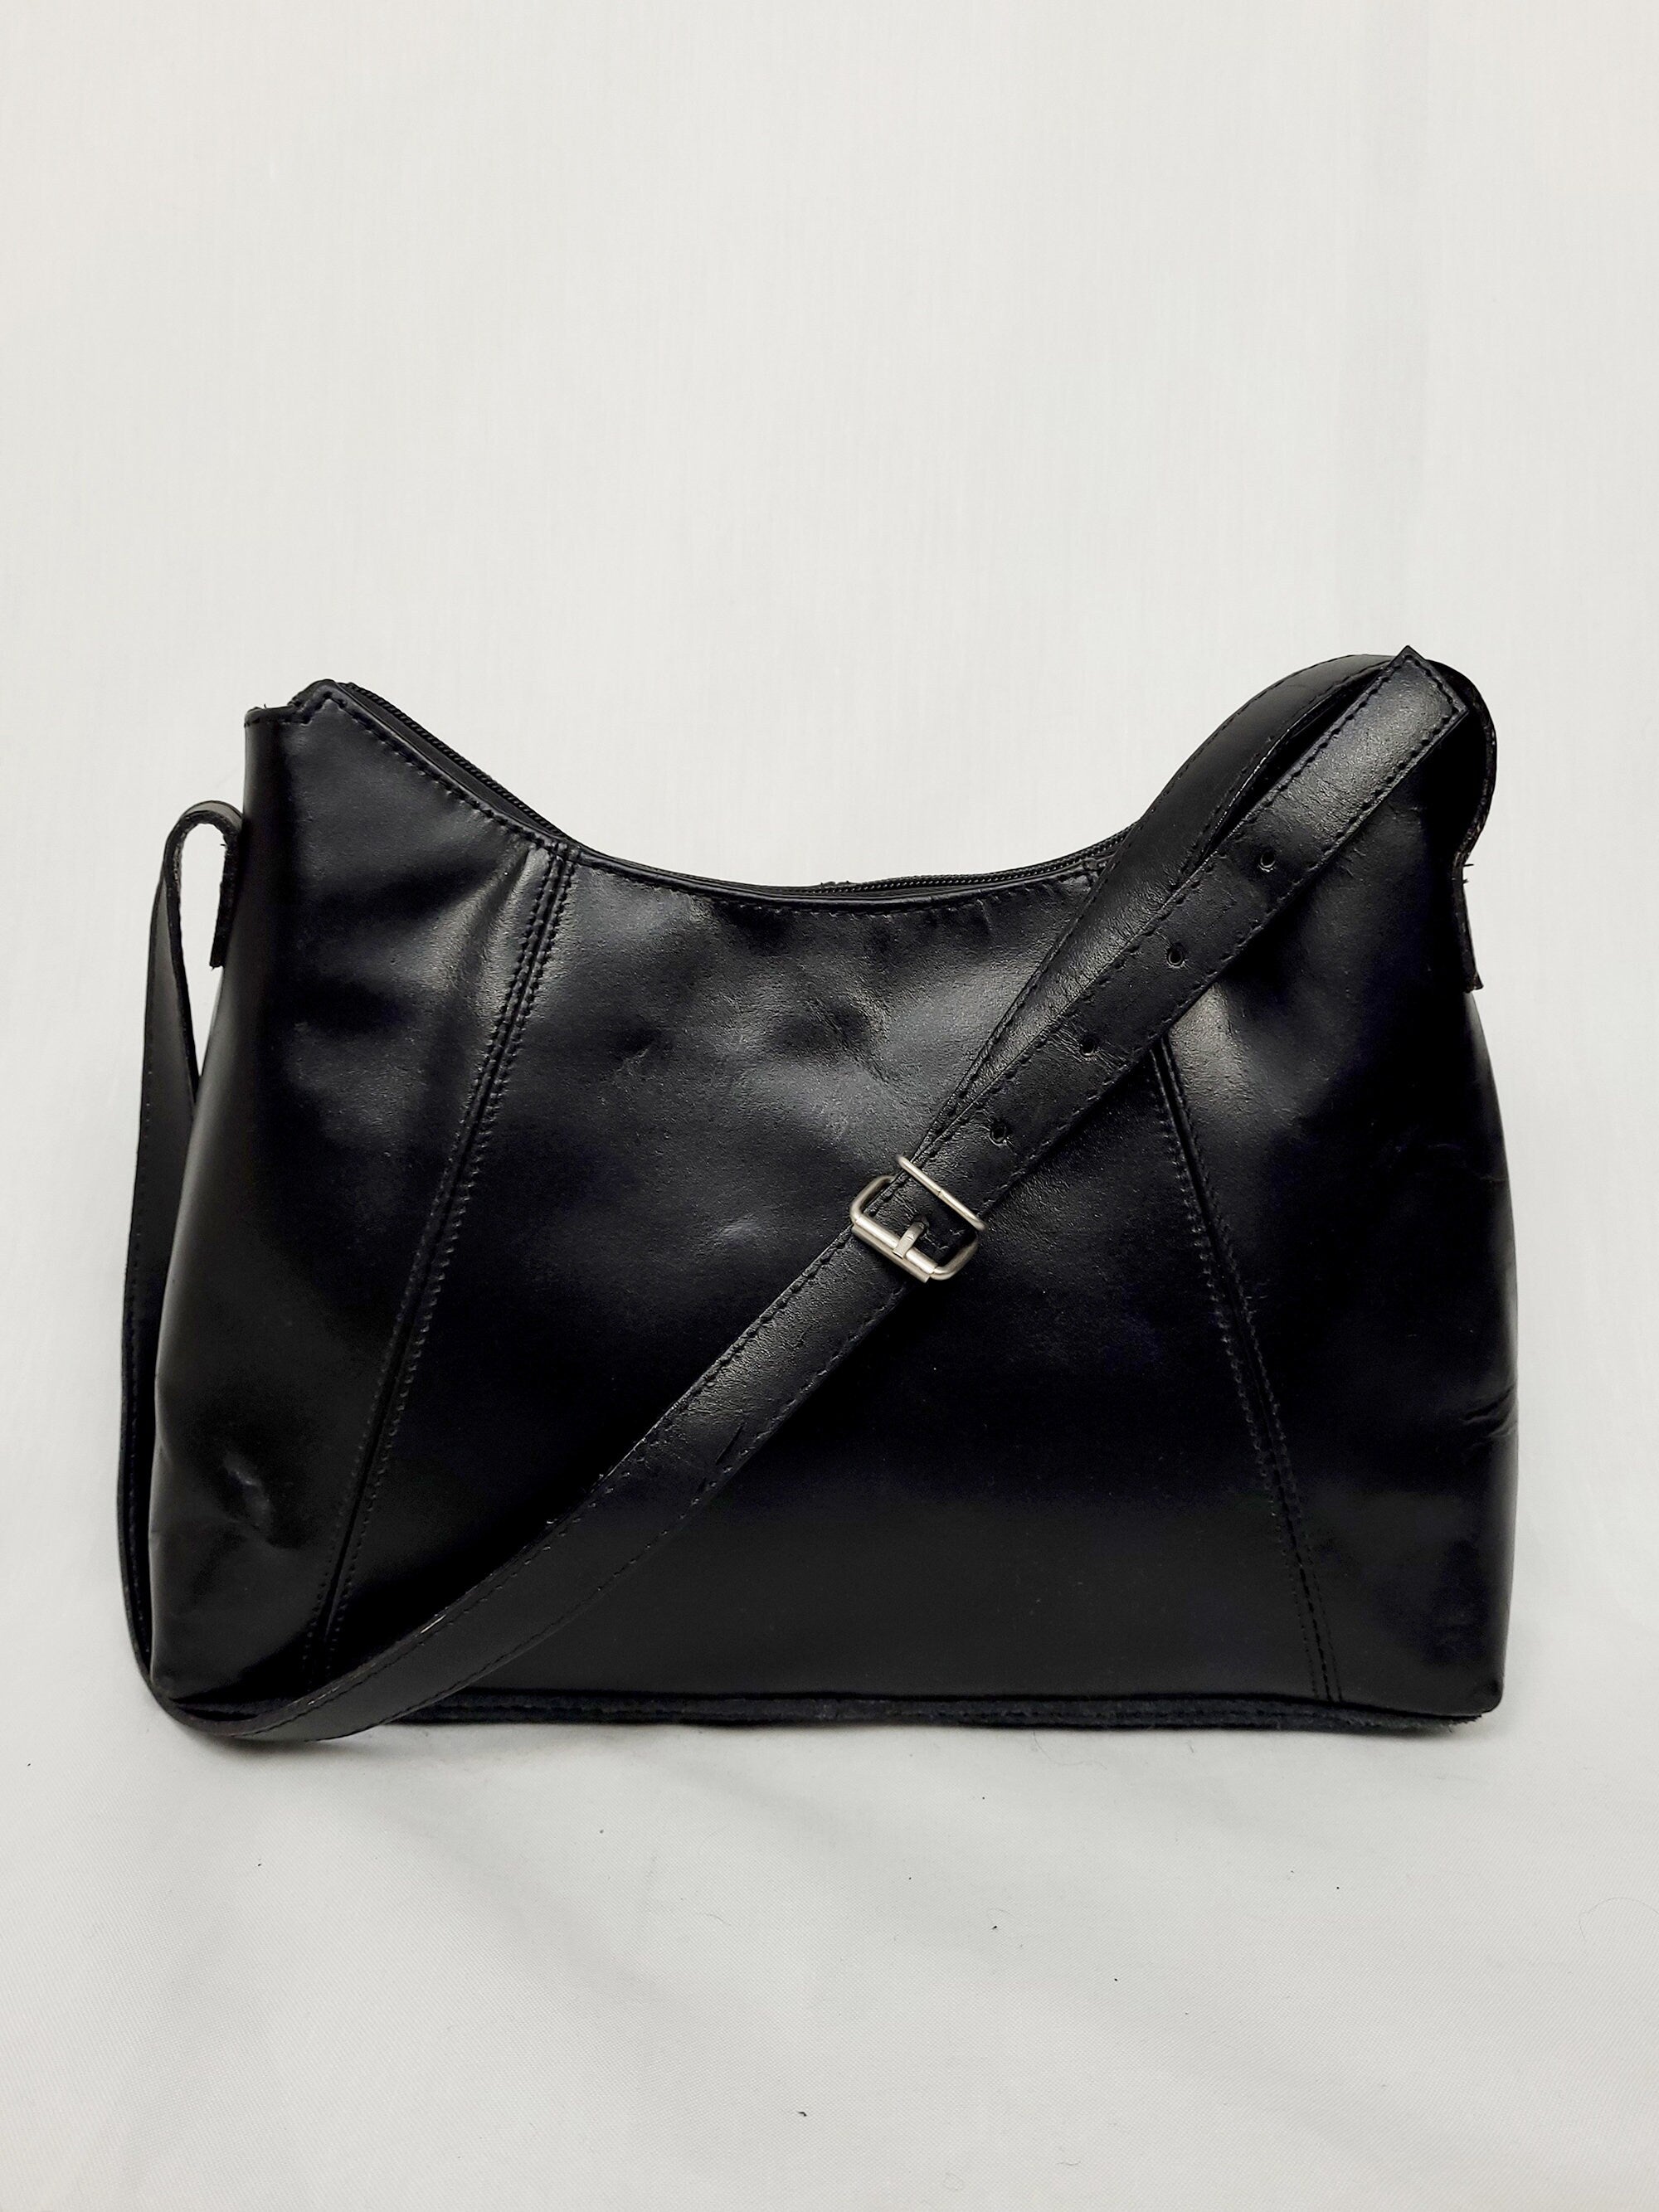 Vintage 90s minimalist black leather shoulder bag